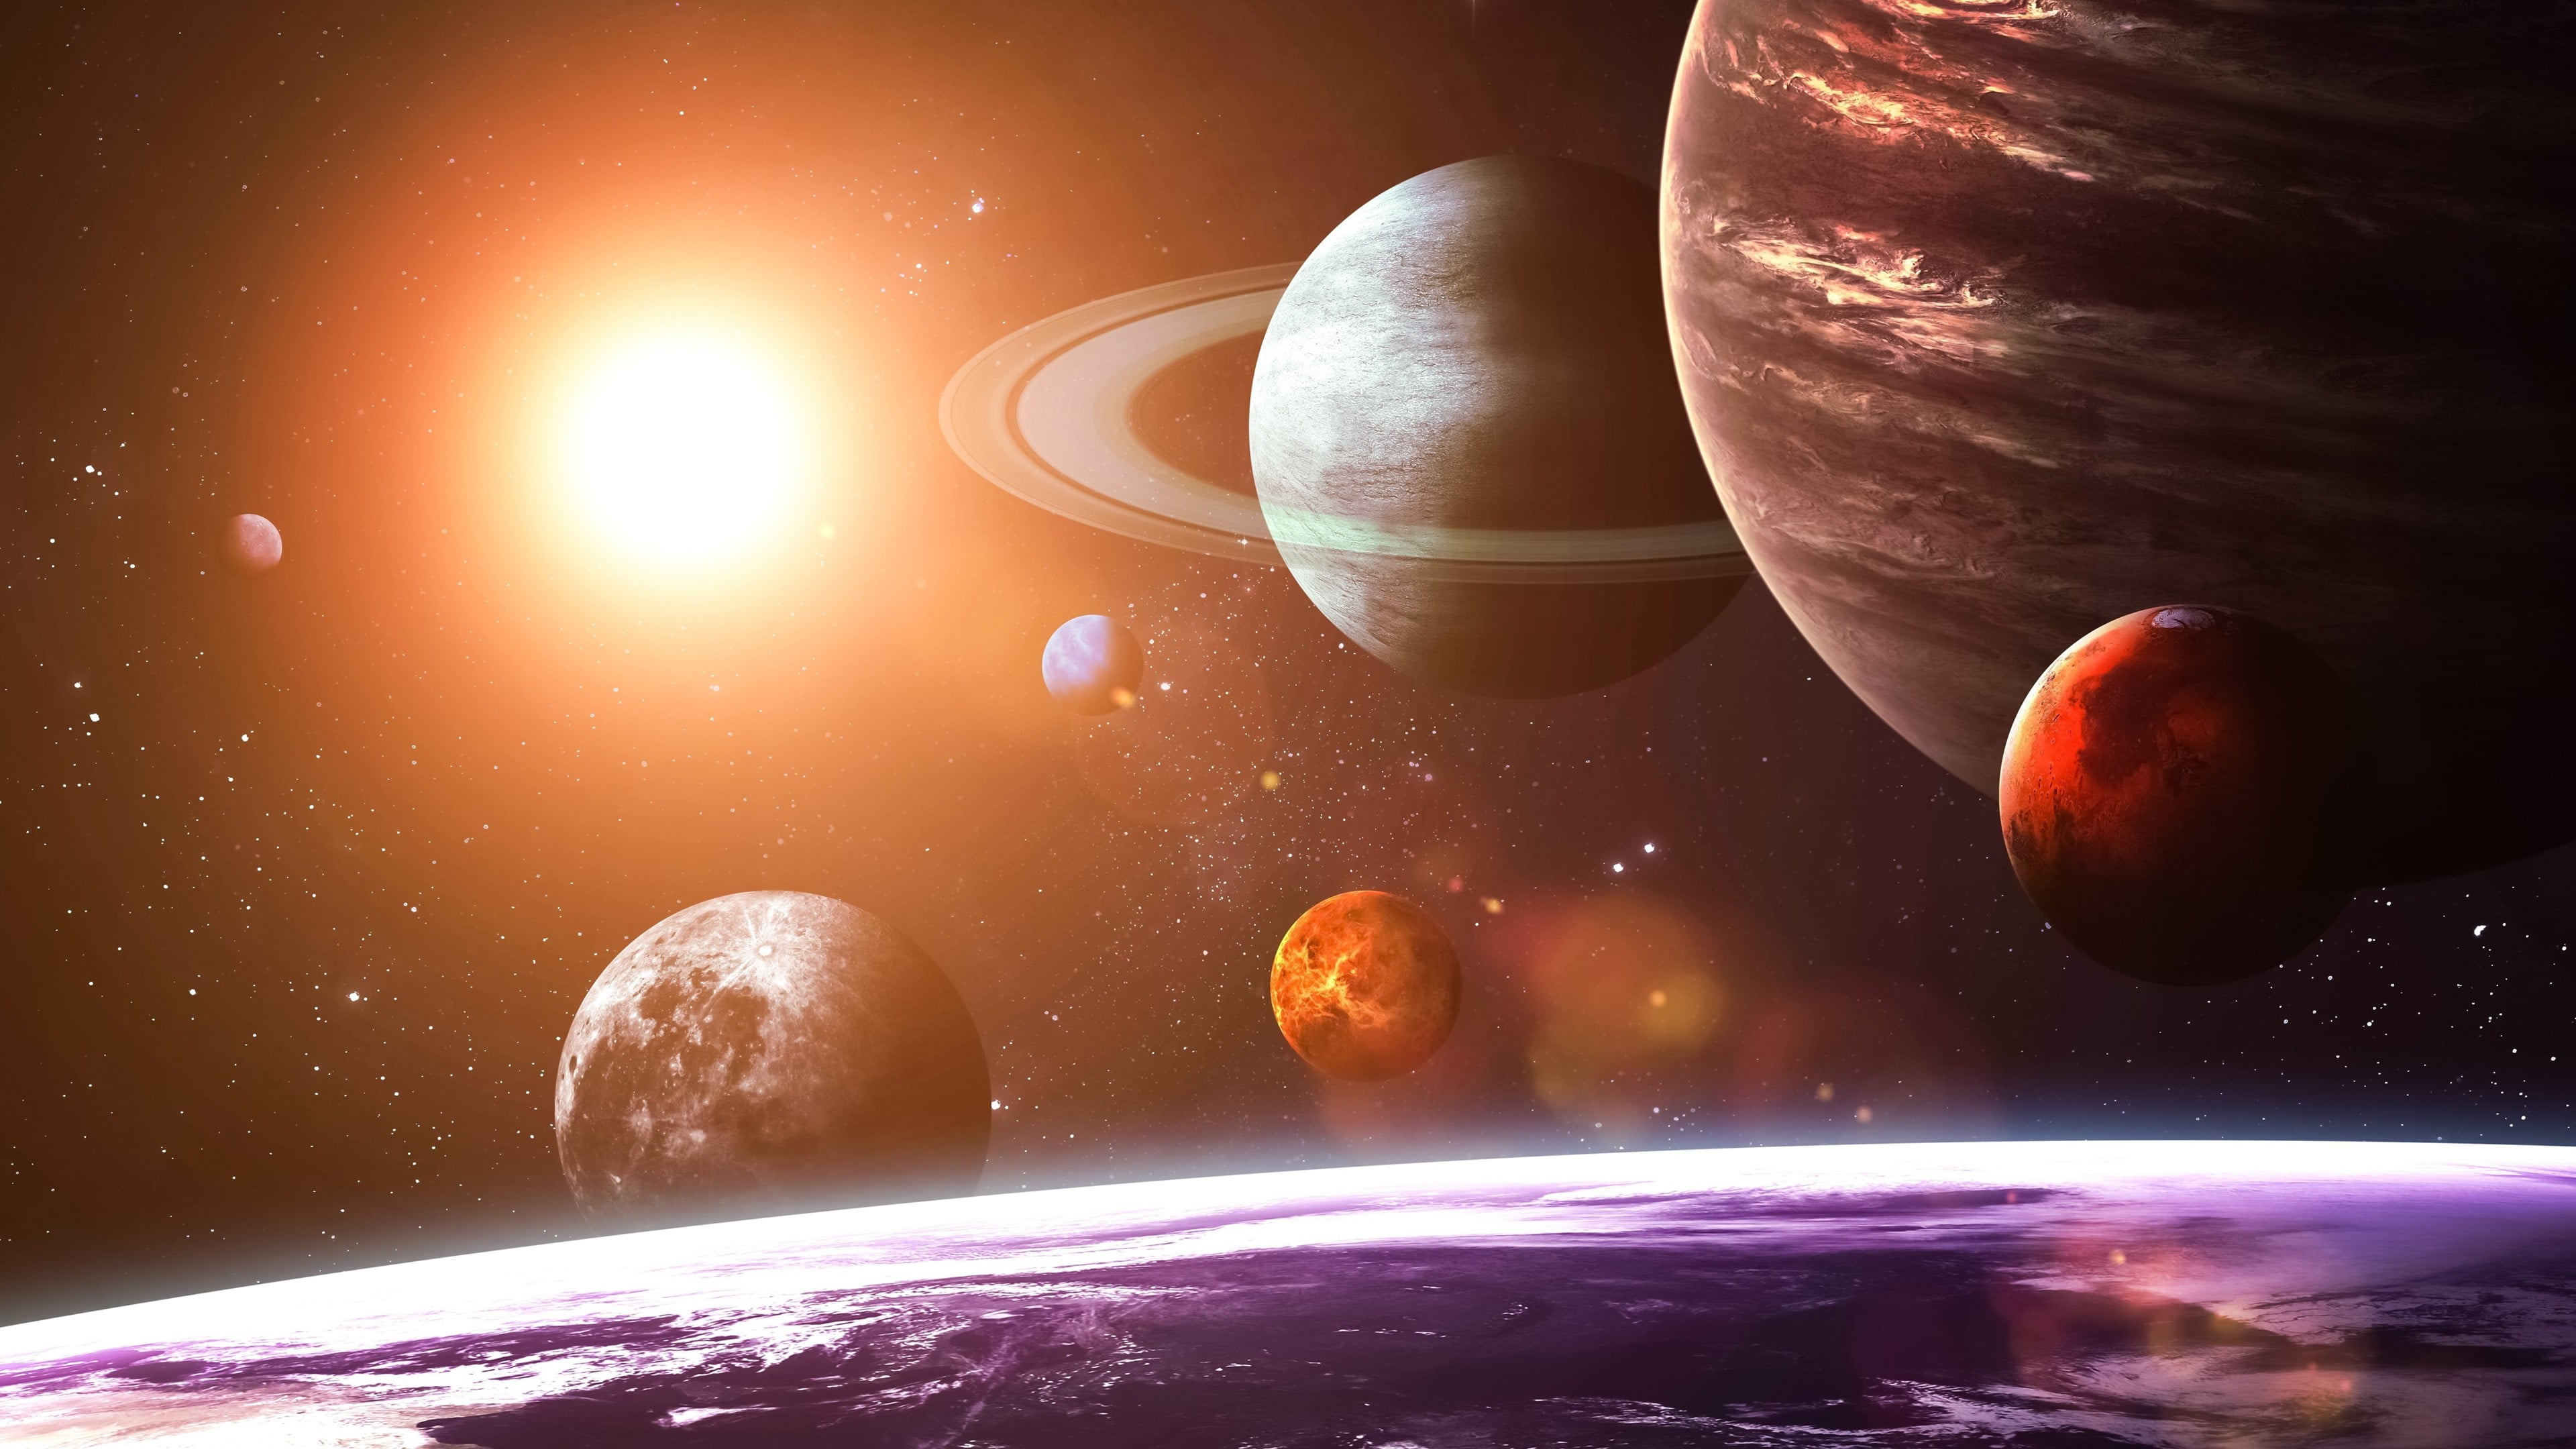 Solar System Planets 4k - 3840x2160 Wallpaper - teahub.io